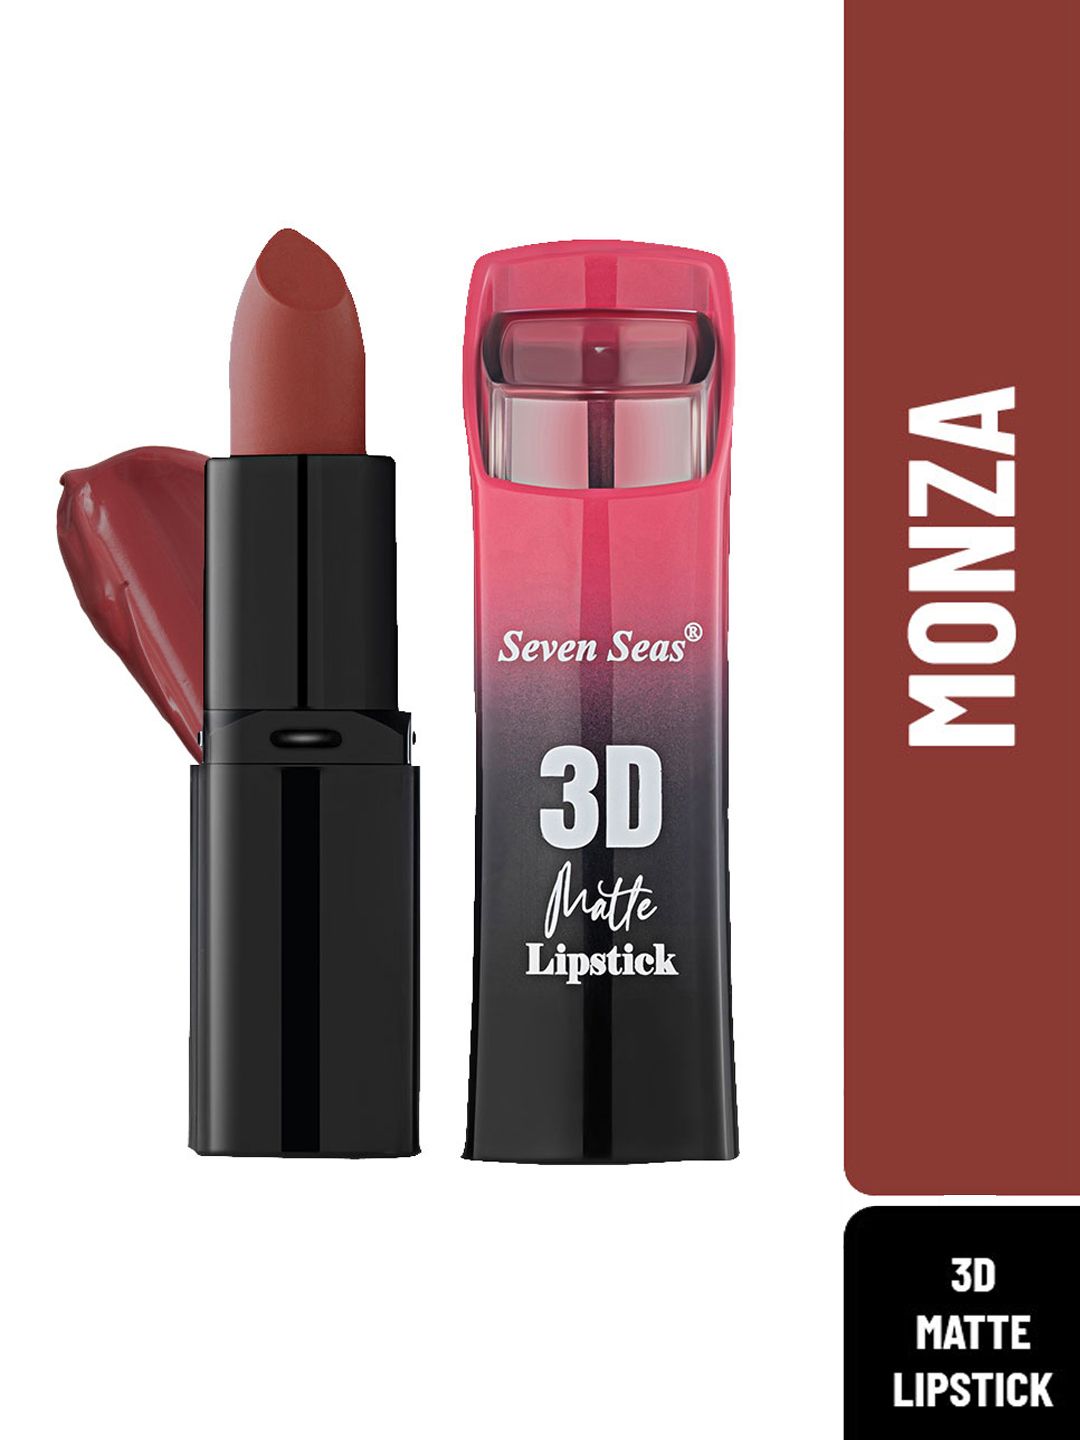 Seven Seas 3D Matte Full Coverage Lipstick, 3.8 g Price in India